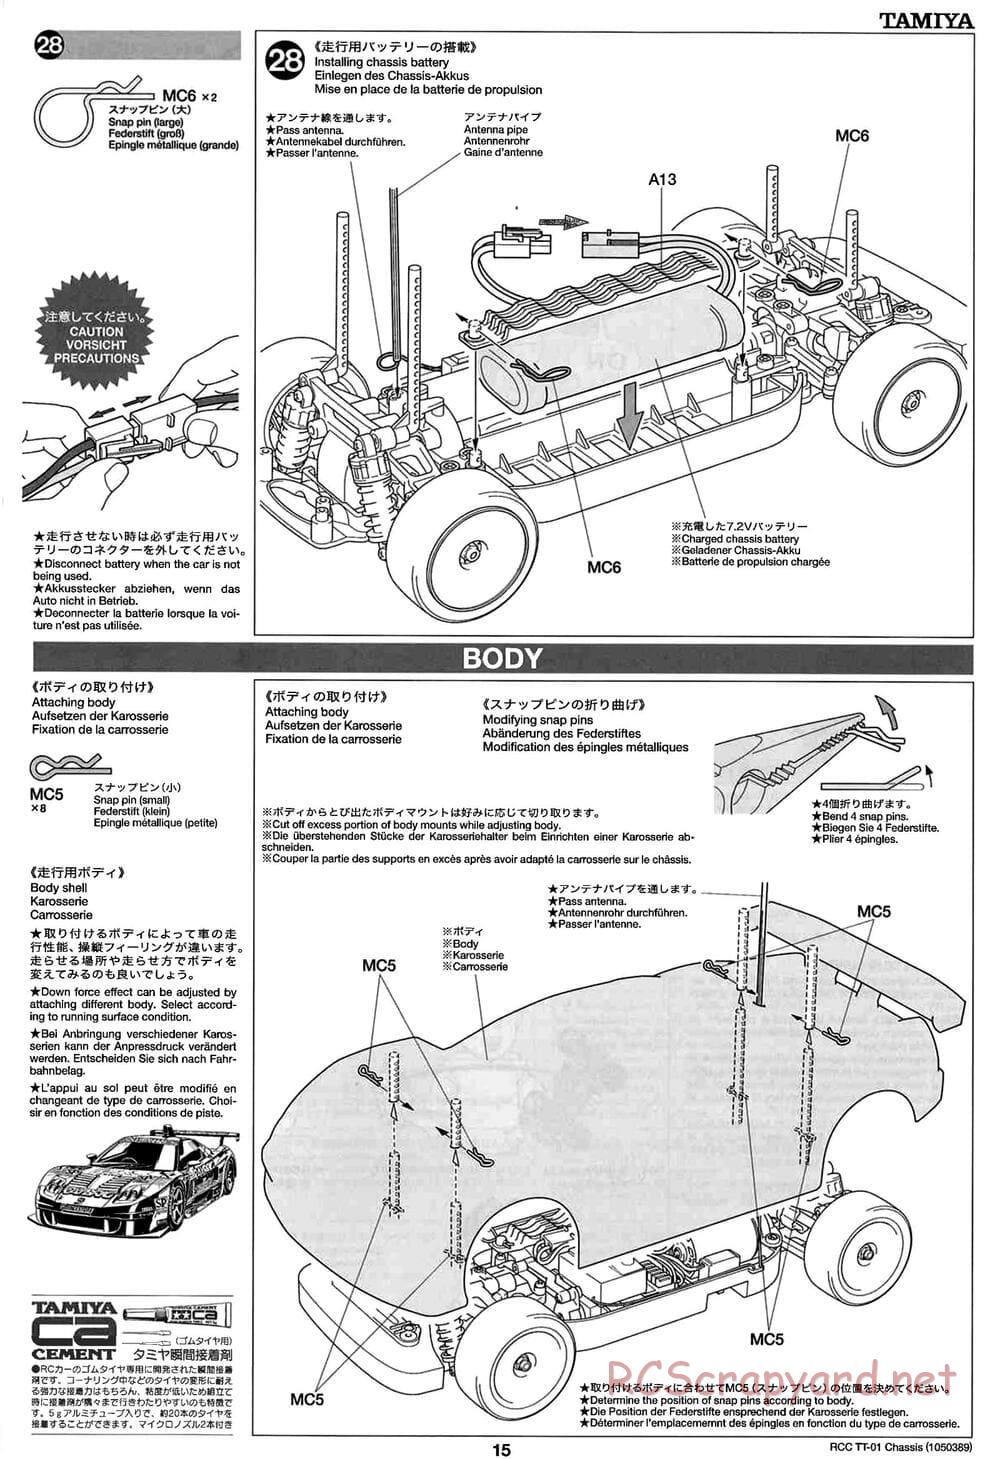 Tamiya - TT-01 Chassis - Manual - Page 15